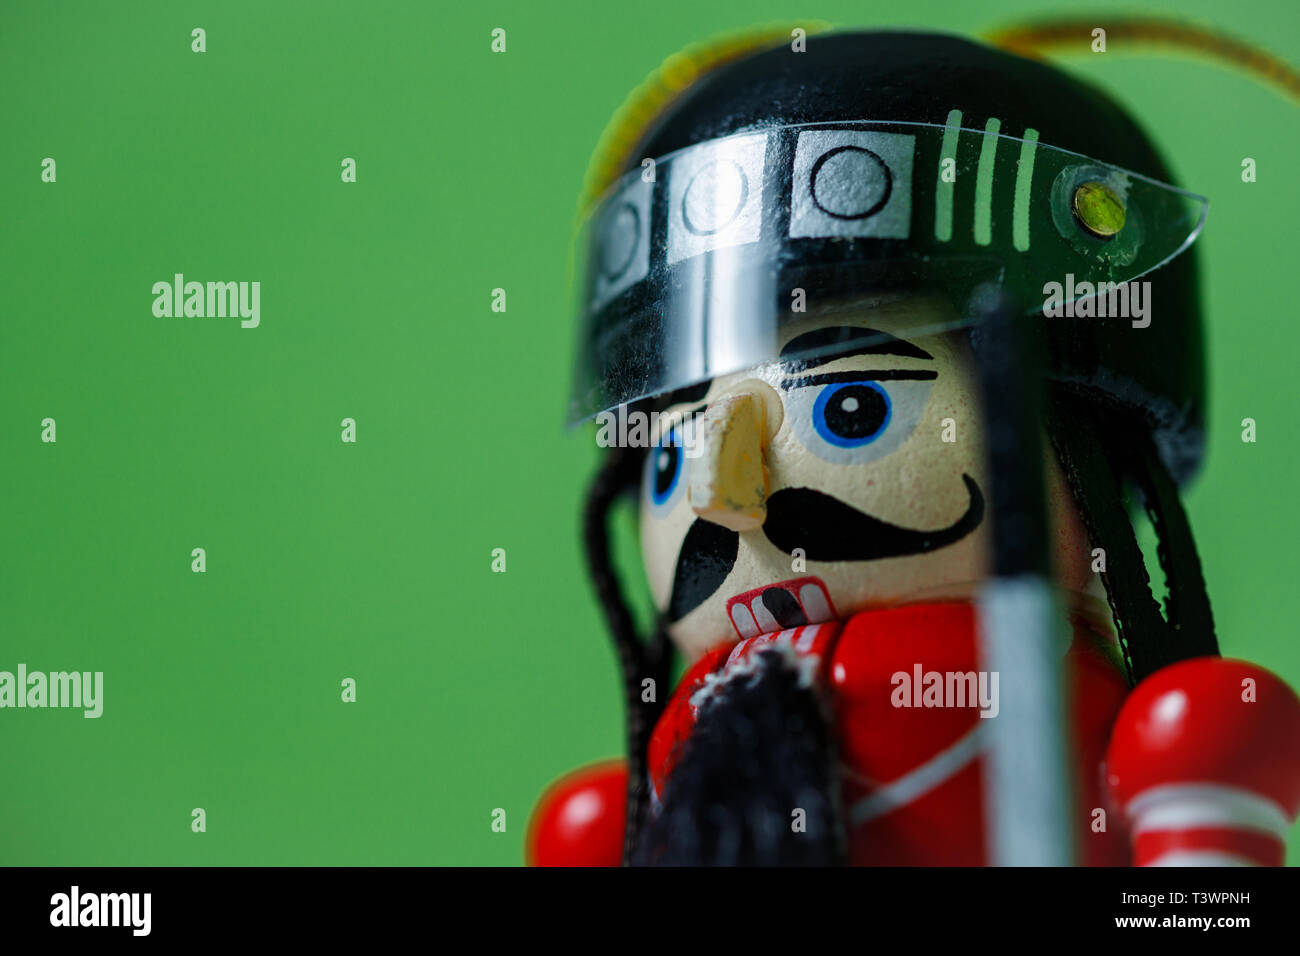 Vue latérale d'un soldat de casse-noisette sur fond vert. Figurine de  soldat casse-noisette dans un casque Photo Stock - Alamy